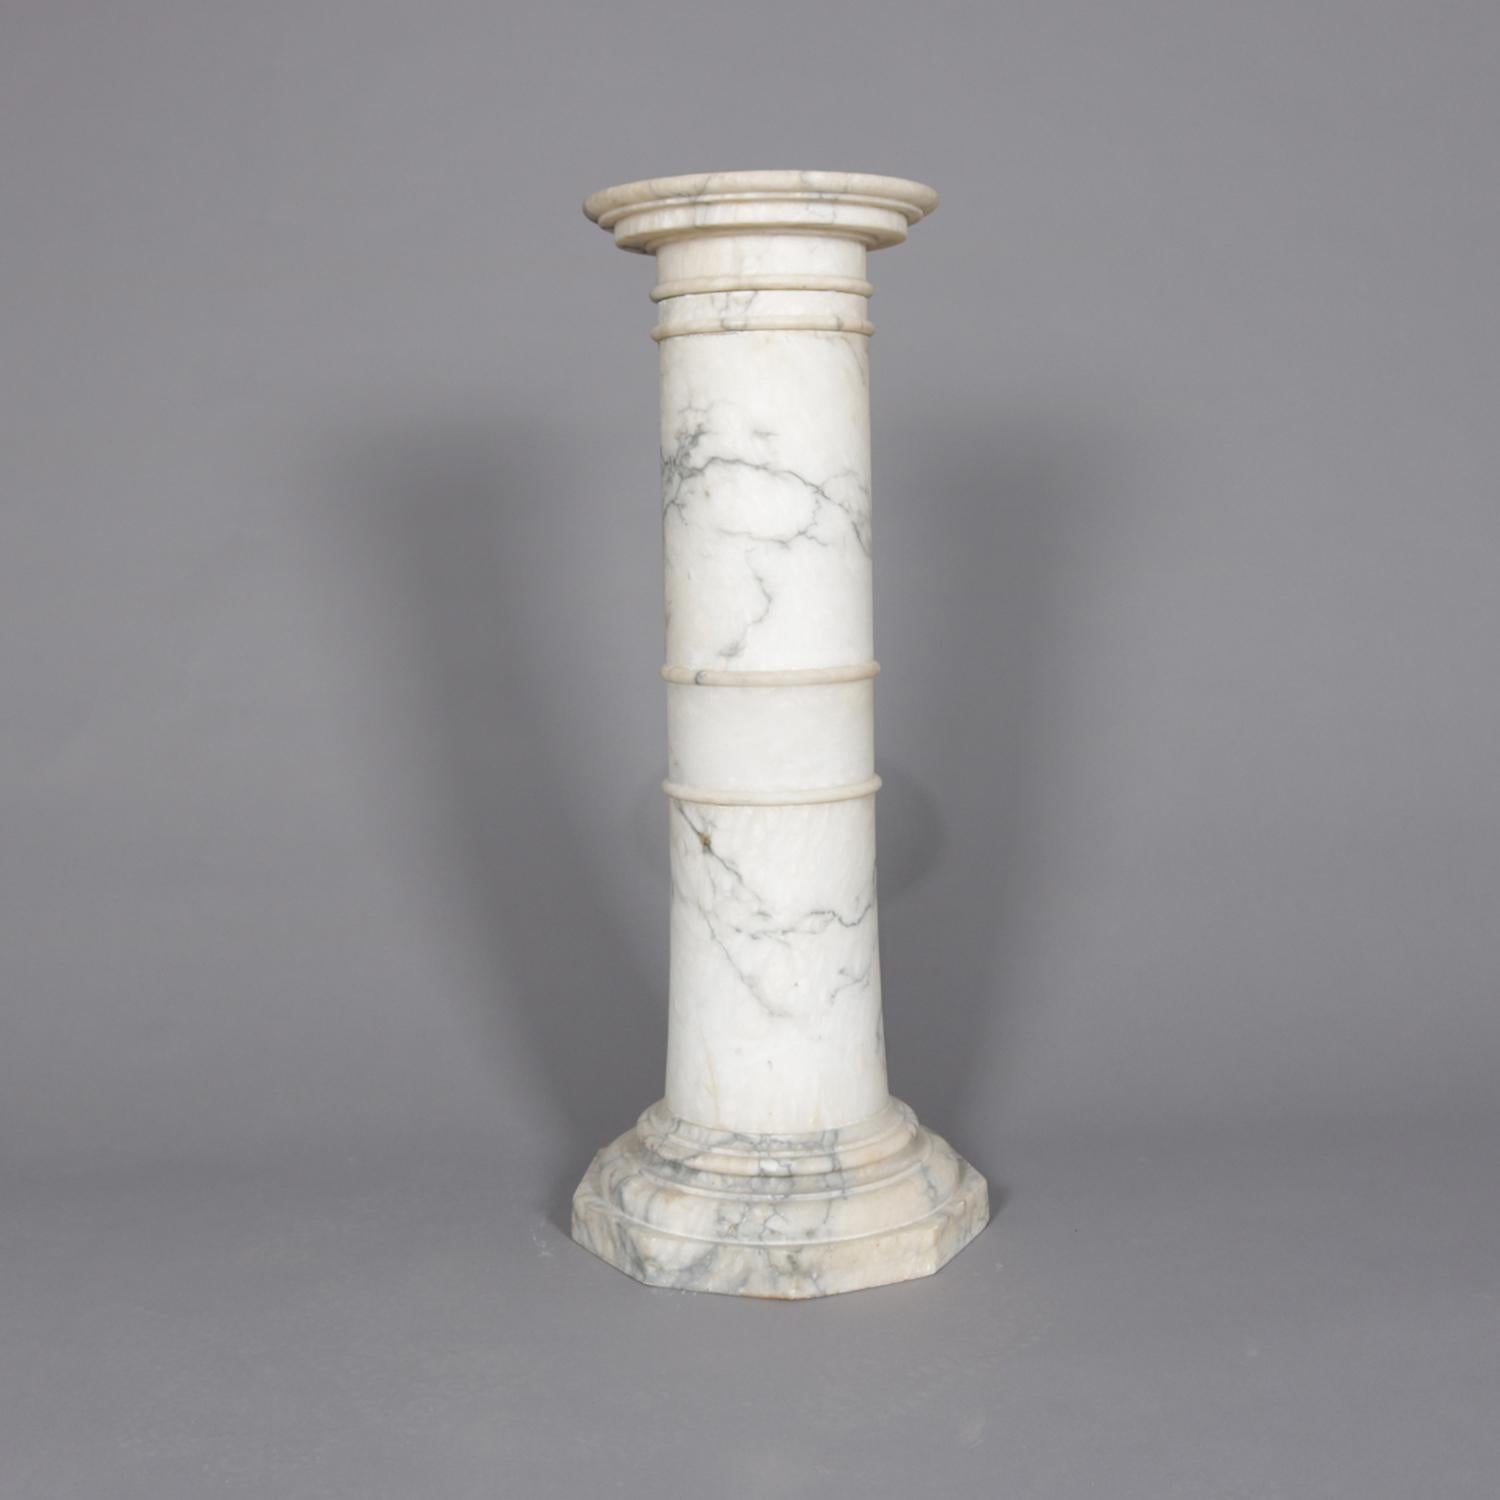 Antique Italian Classical Corinthian Column Sculpture Display Pedestal (Geschnitzt)